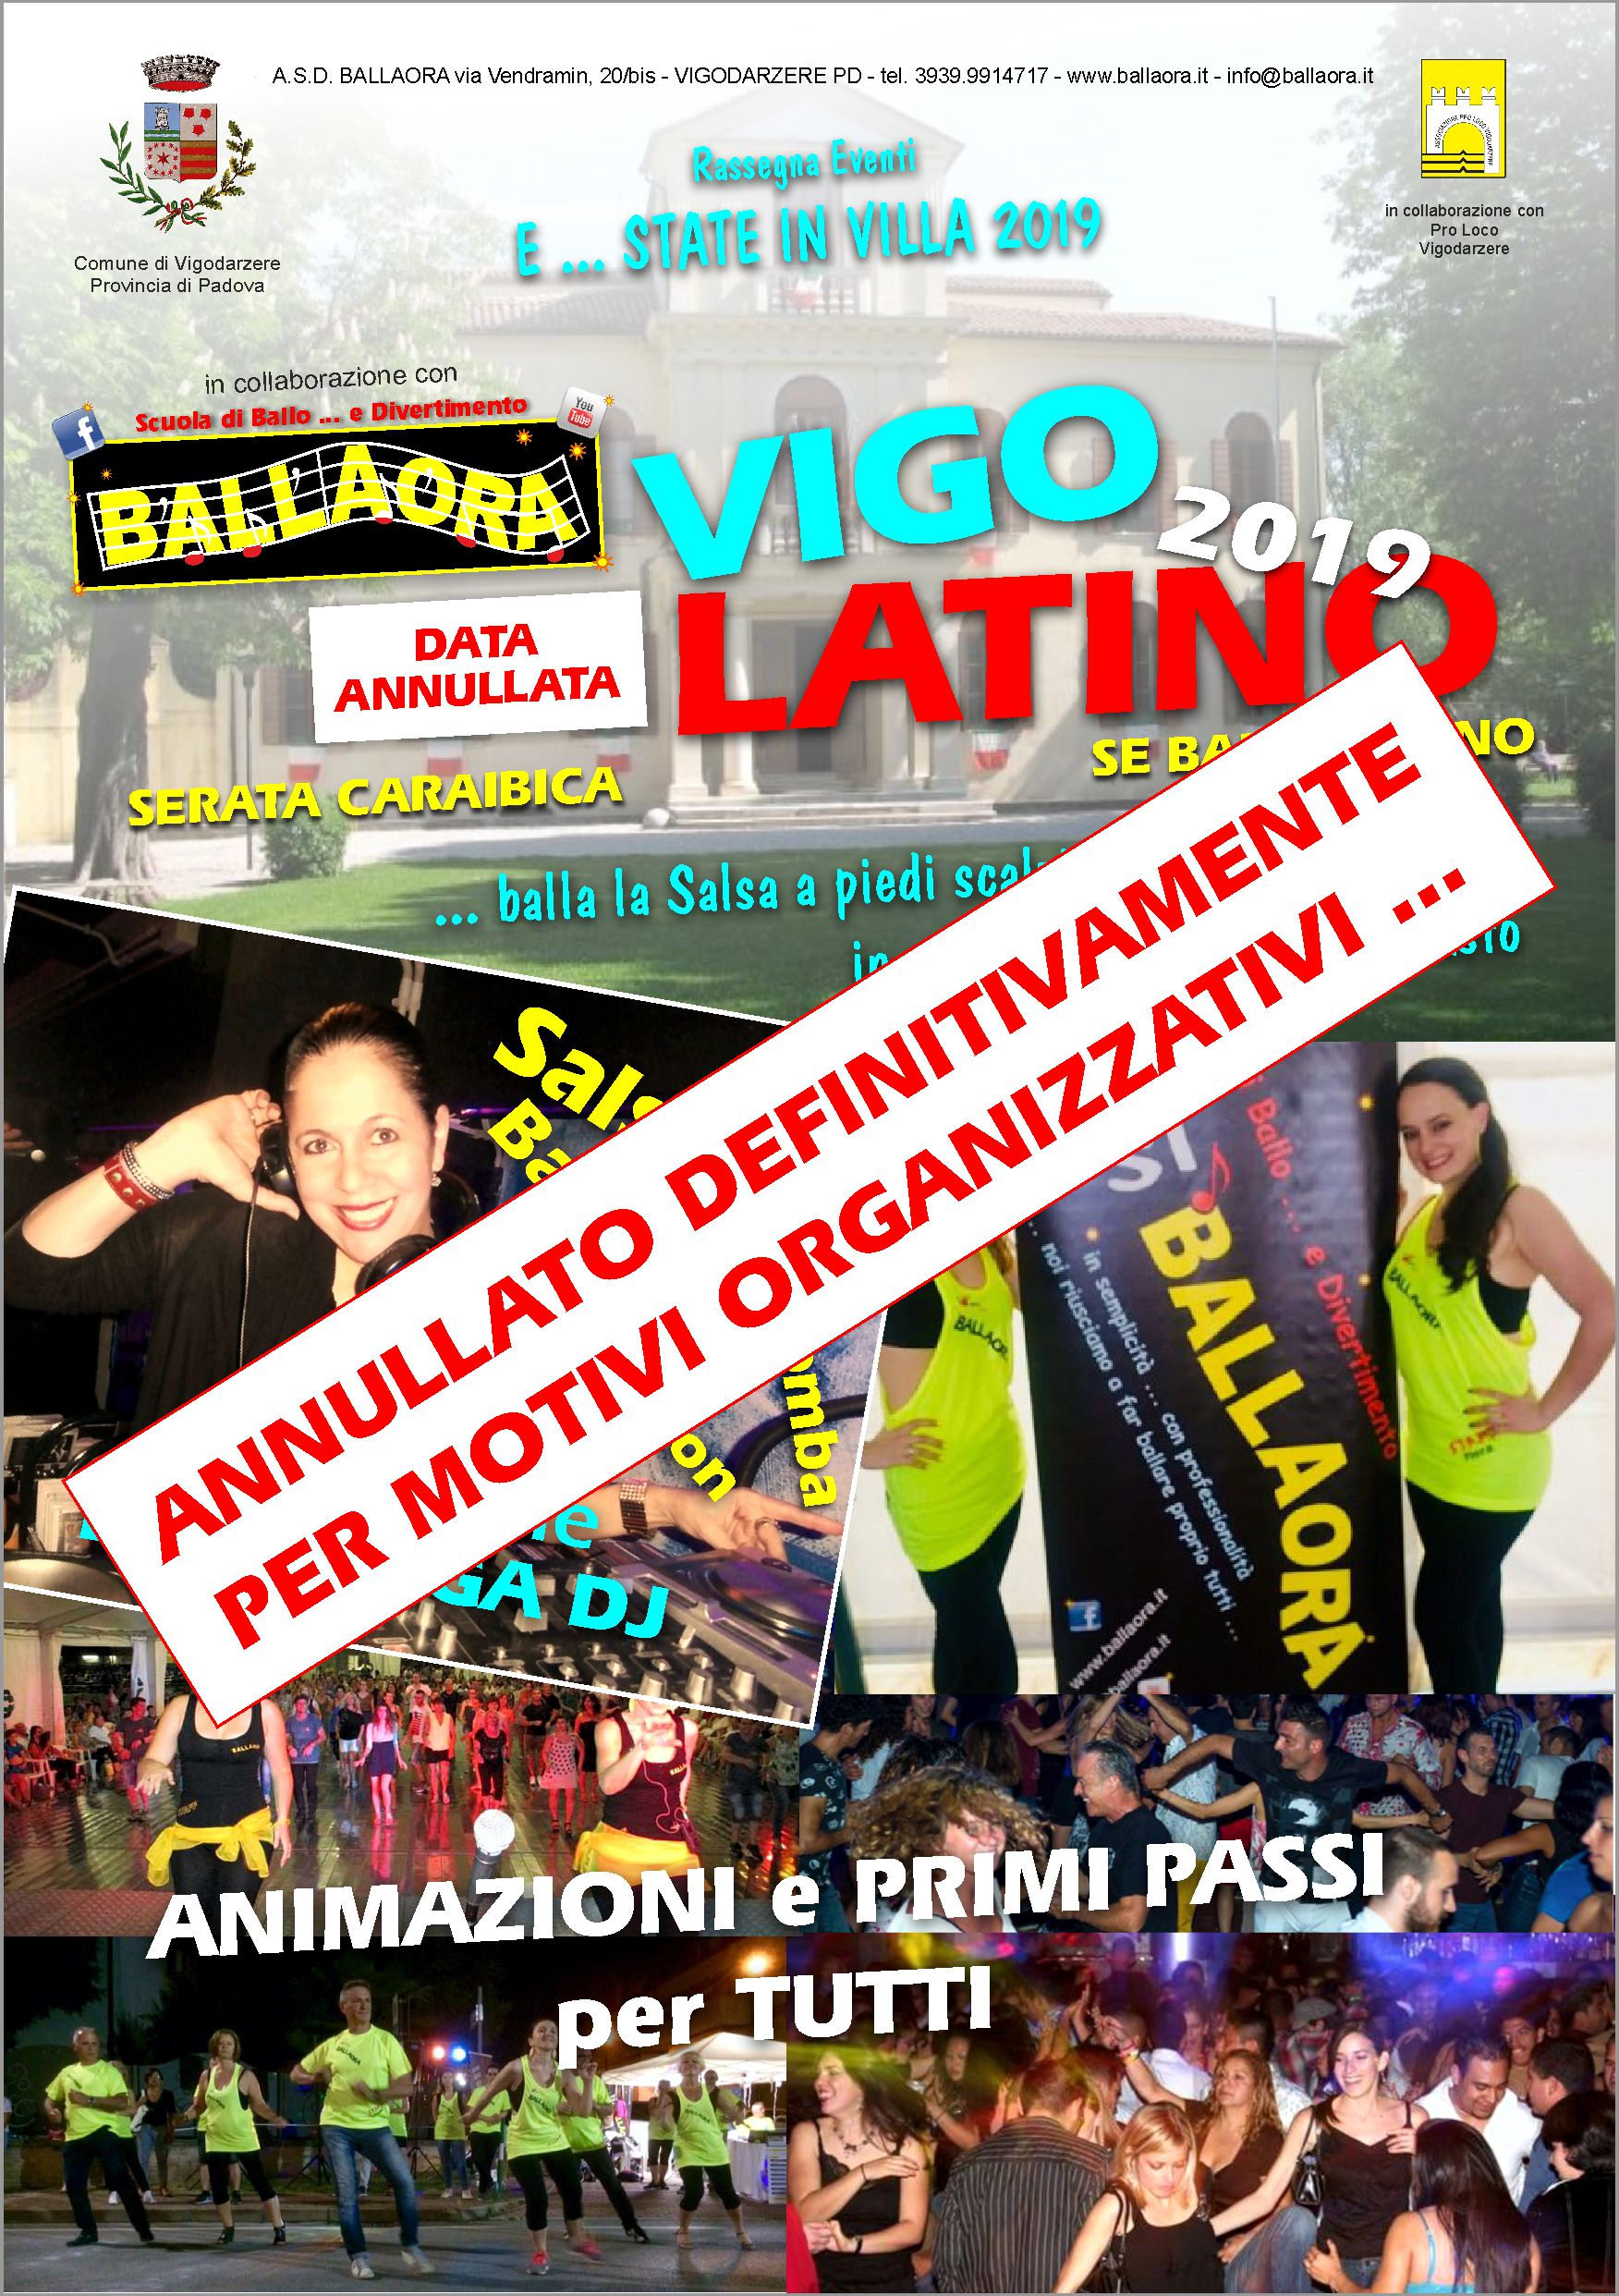 Vigo Latino 2019